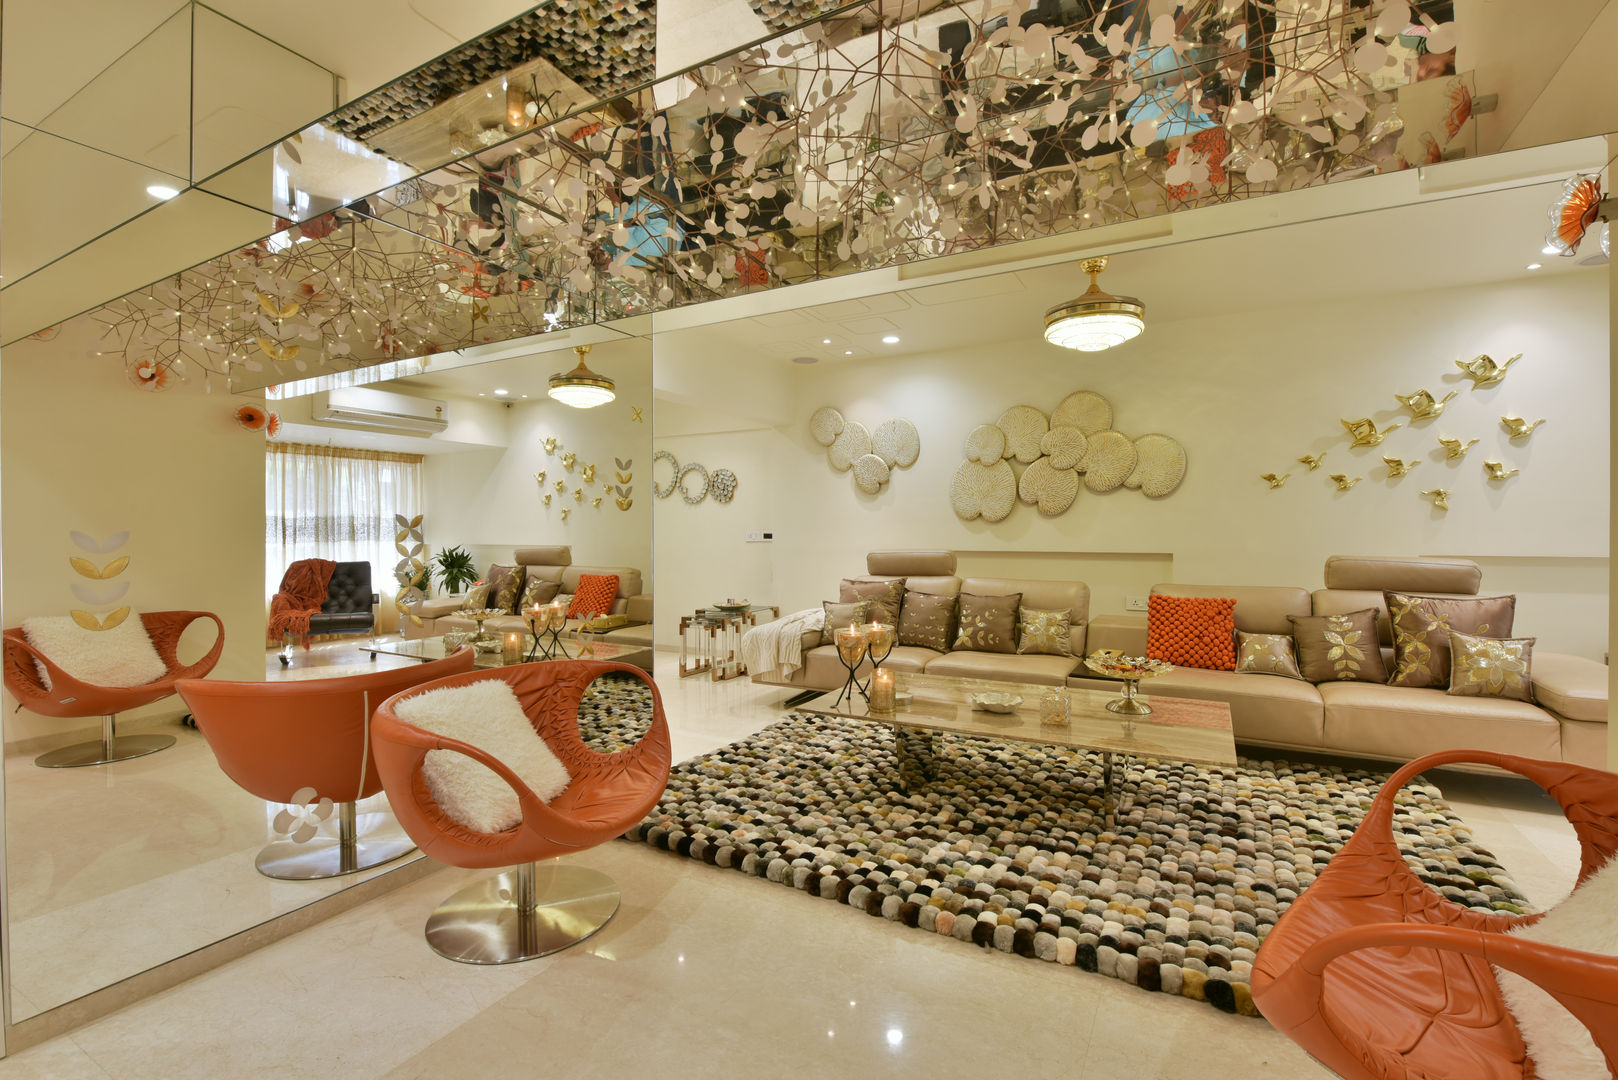 site at worli (mumbai), Mybeautifulife Mybeautifulife Salas de estar modernas